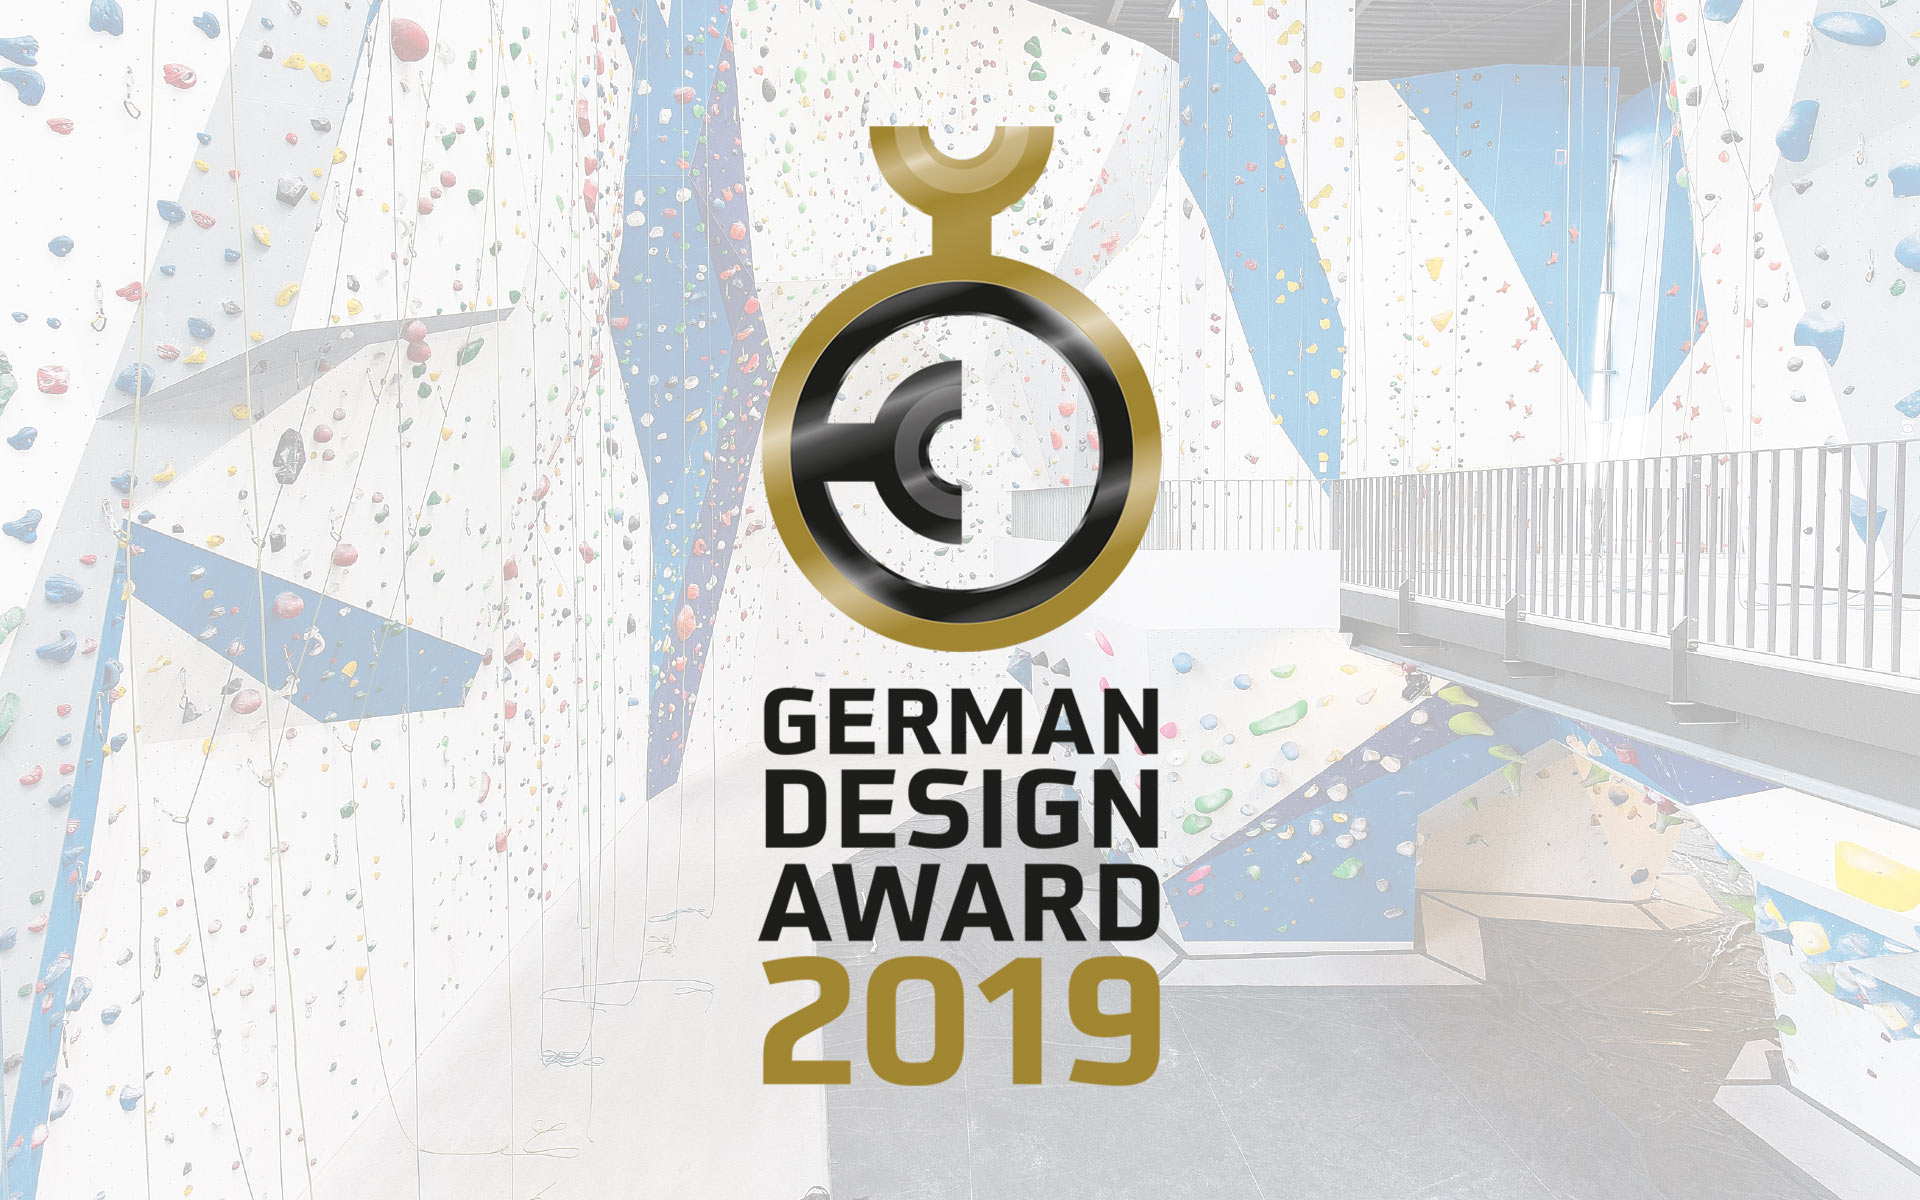 German Design Award 2019 – Nominierung des Corporate Design der Bergstation